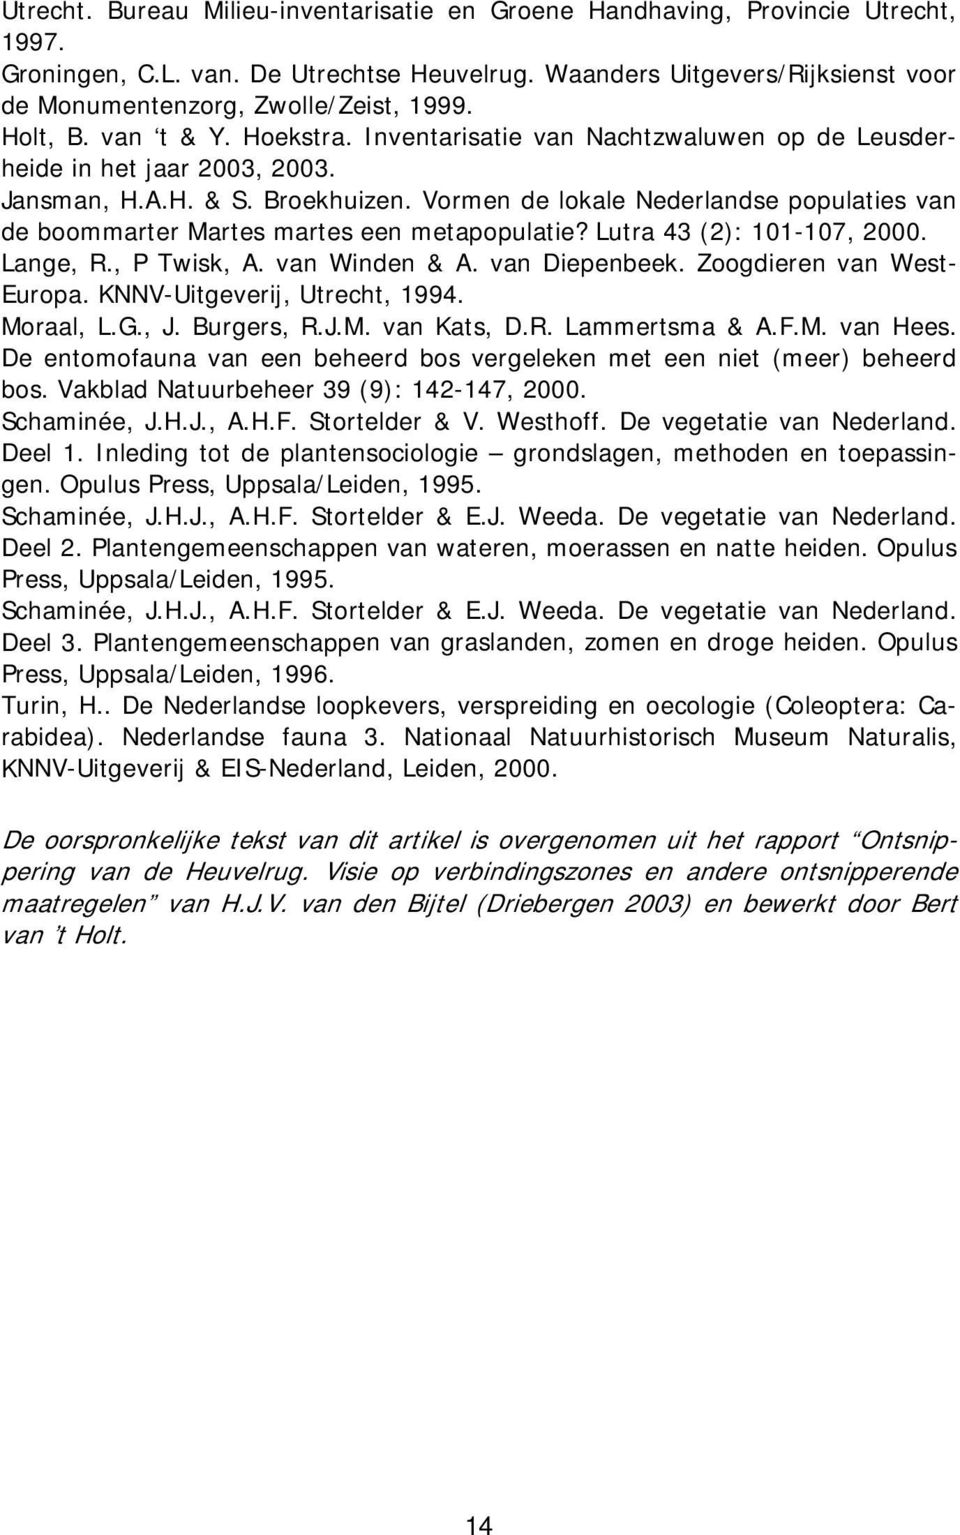 Lutra 43 (2): 101-107, 2000. heide in het jaar 2003, 2003. Jansman, H.A.H. & S. Broekhuizen. Vormen de lokale Nederlandse populaties van Lange, R., P Twisk, A. van Winden & A. van Diepenbeek.